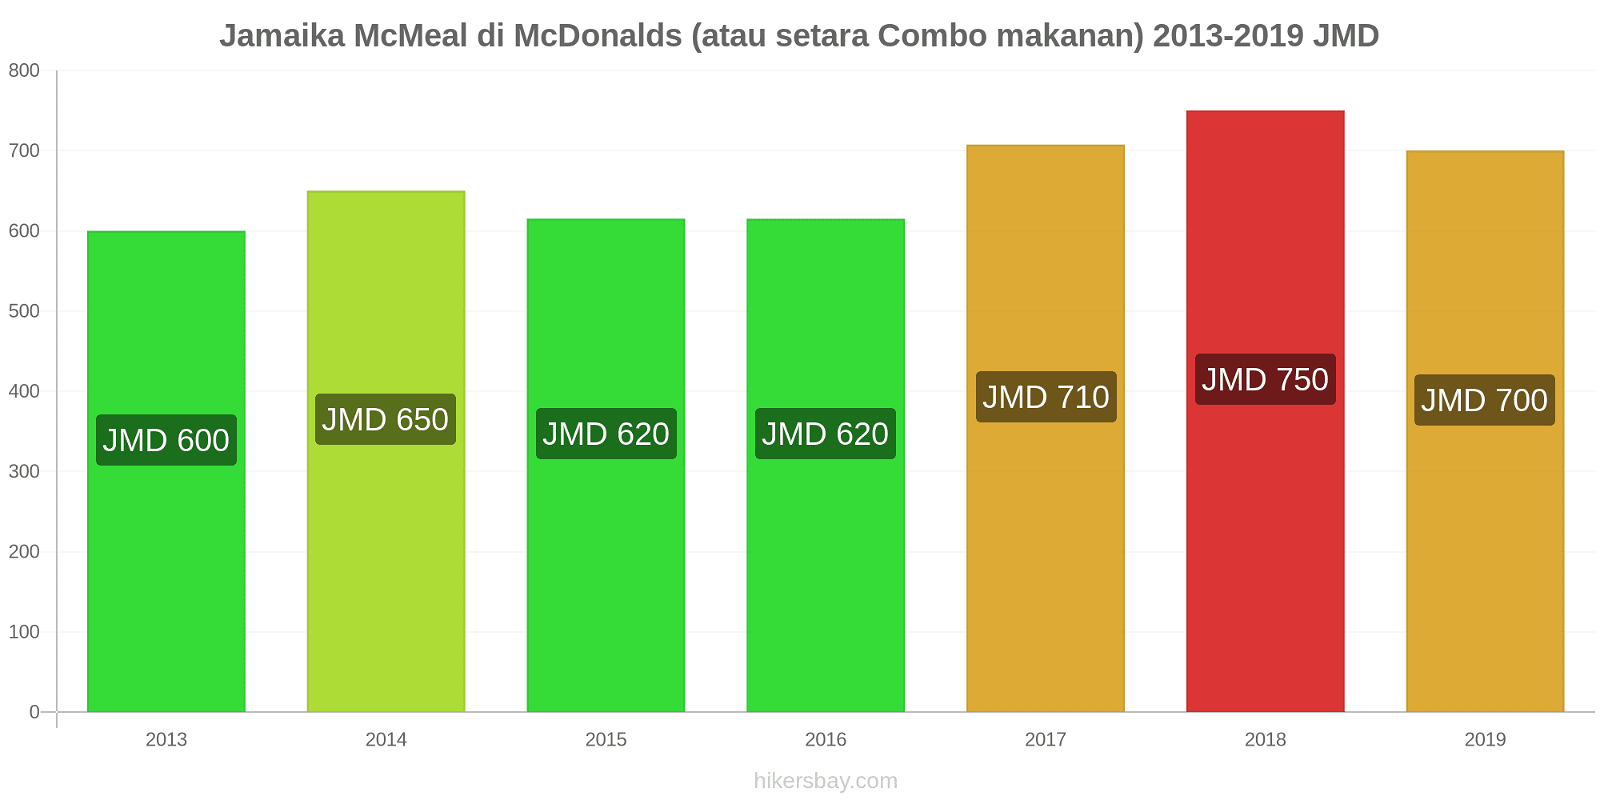 Jamaika perubahan harga McMeal di McDonalds (atau setara Combo makanan) hikersbay.com